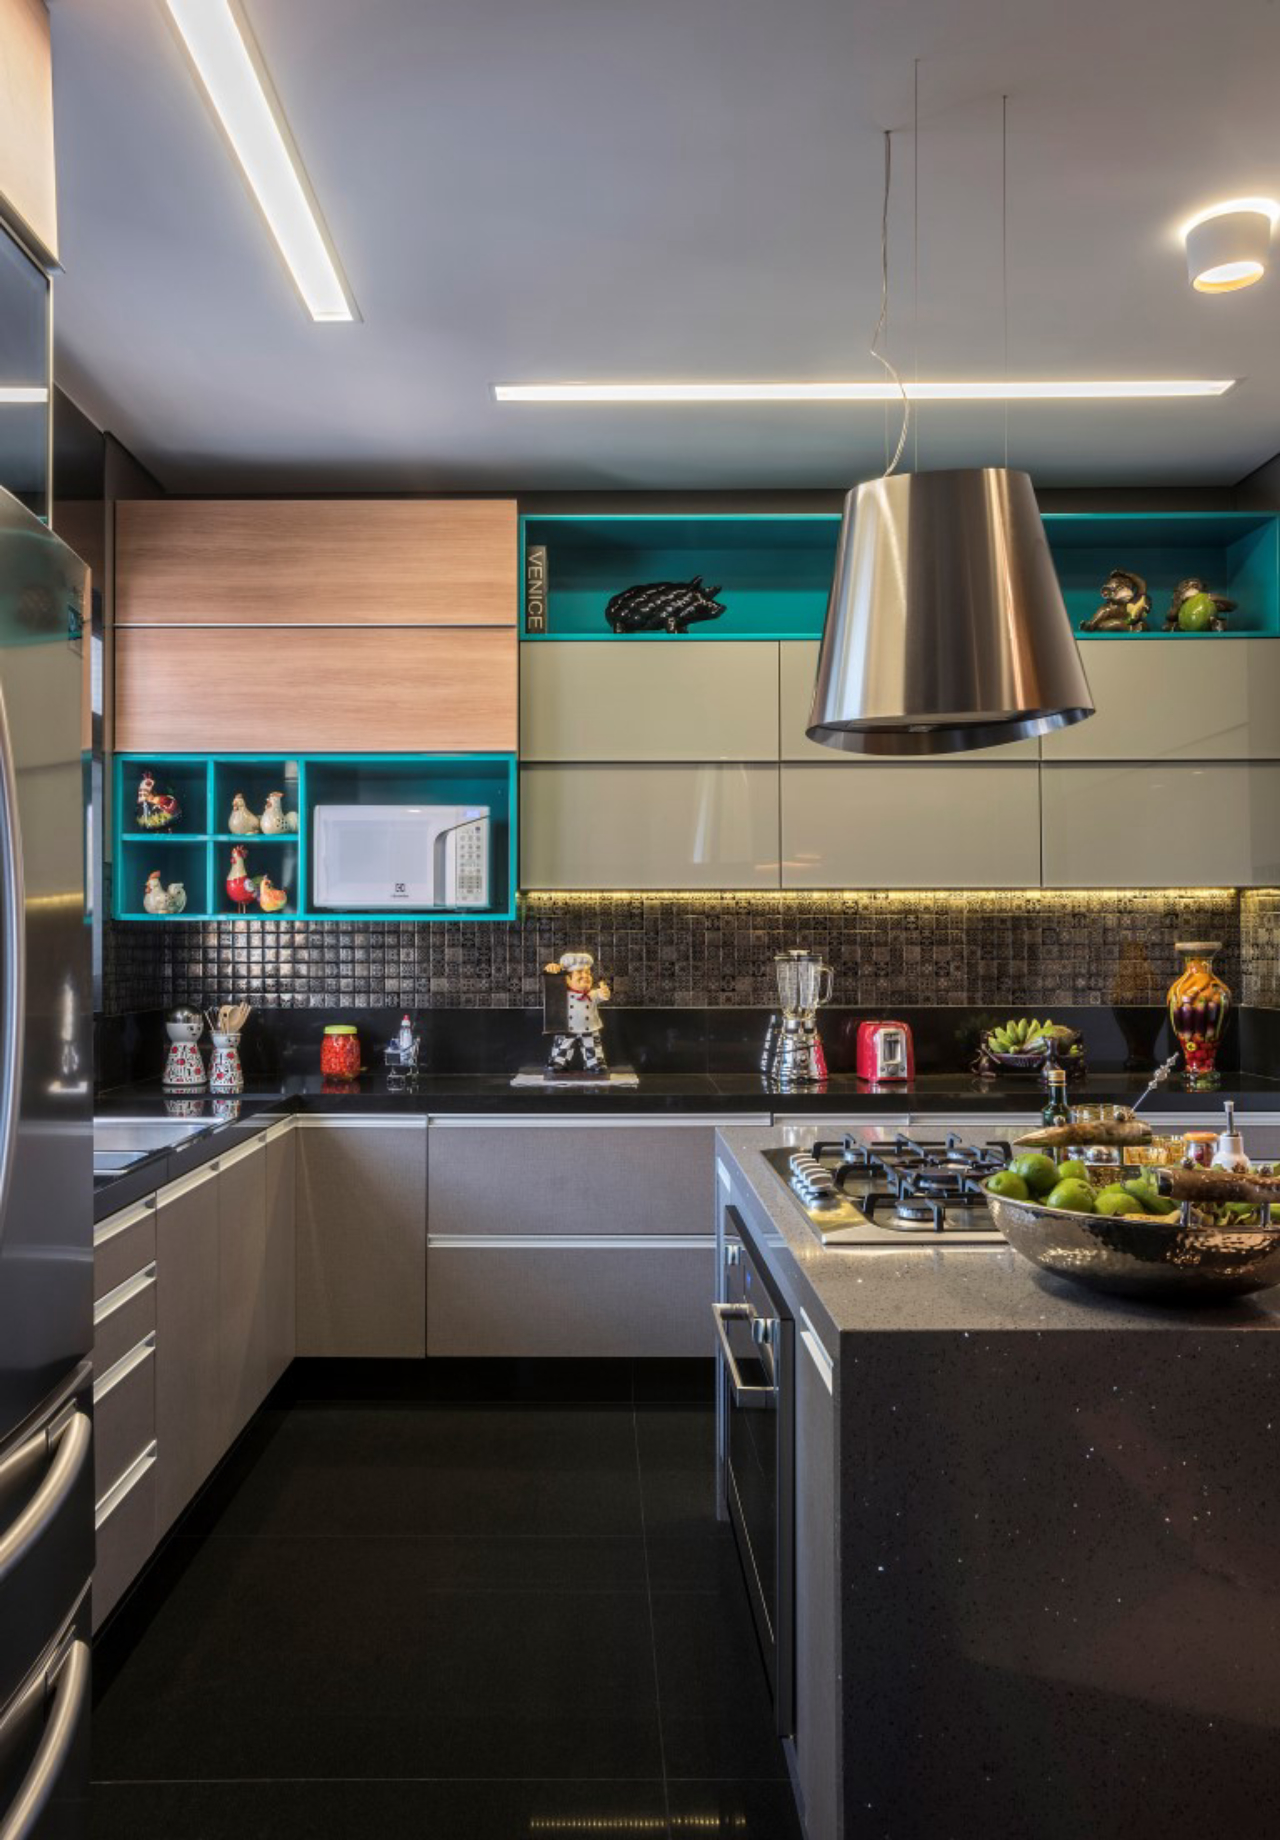 Iara Santos criou uma cozinha bonita, sofisticada e alegre usando nichos  coloridos na marcenaria.<br>Foto: Daniel Mansur / Divulgação 